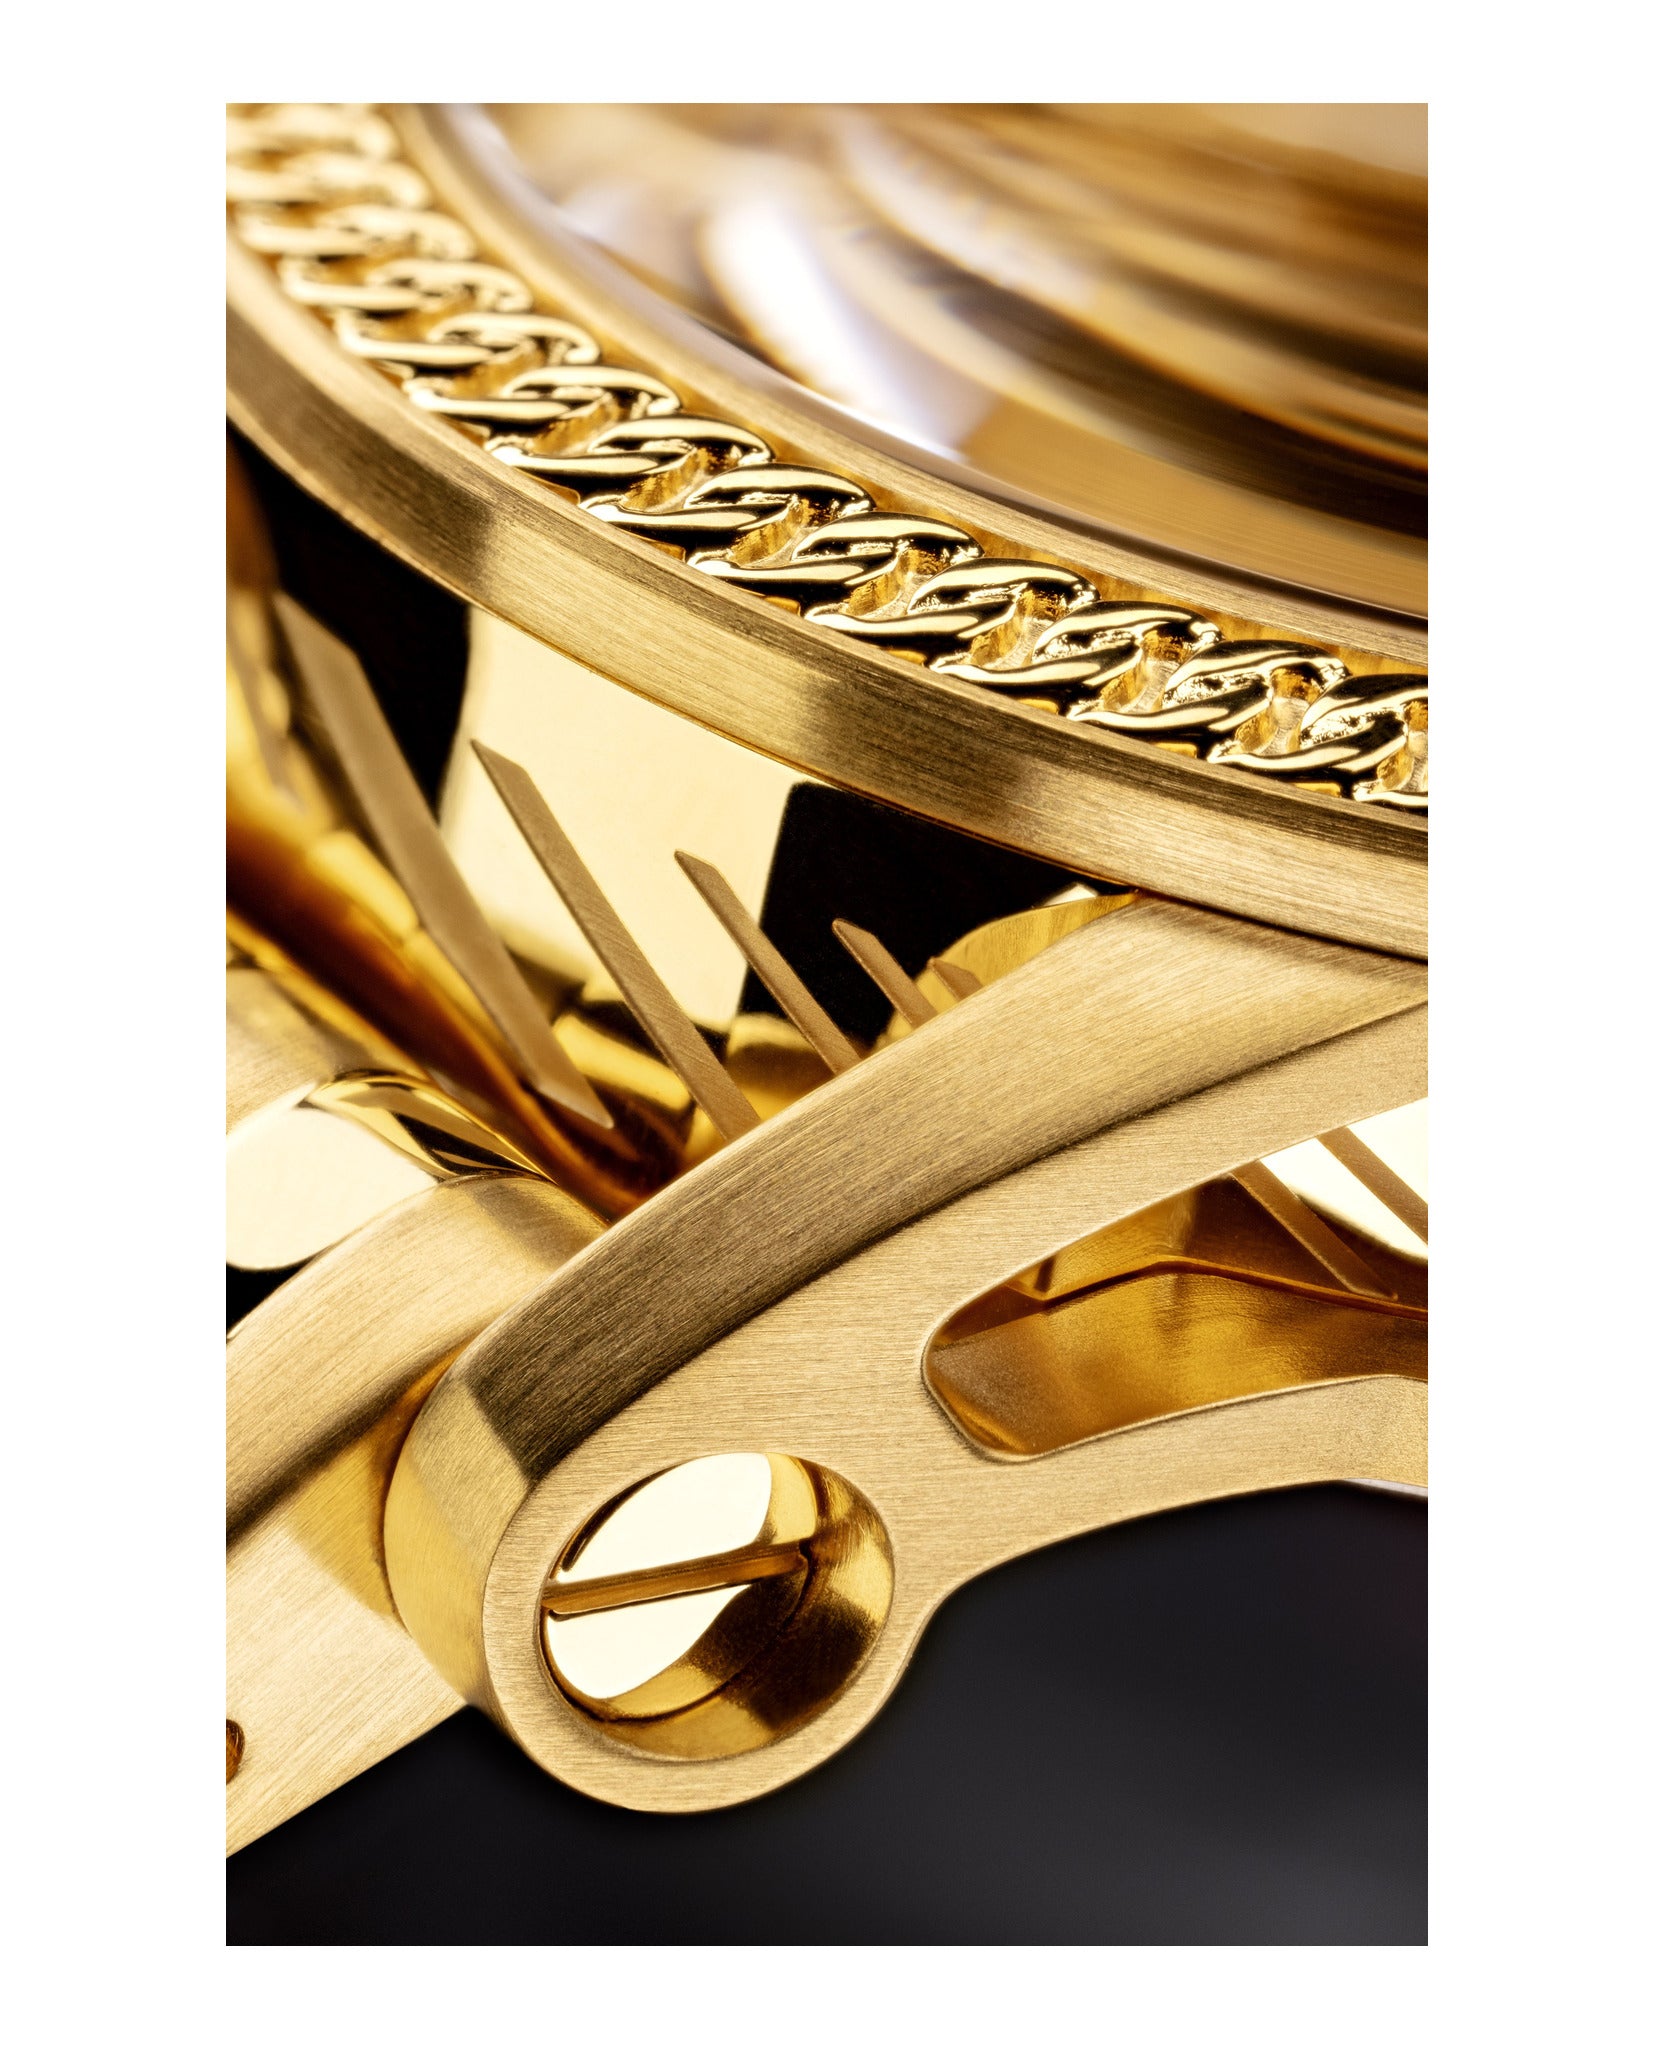 Versace Code Bracelet Watch